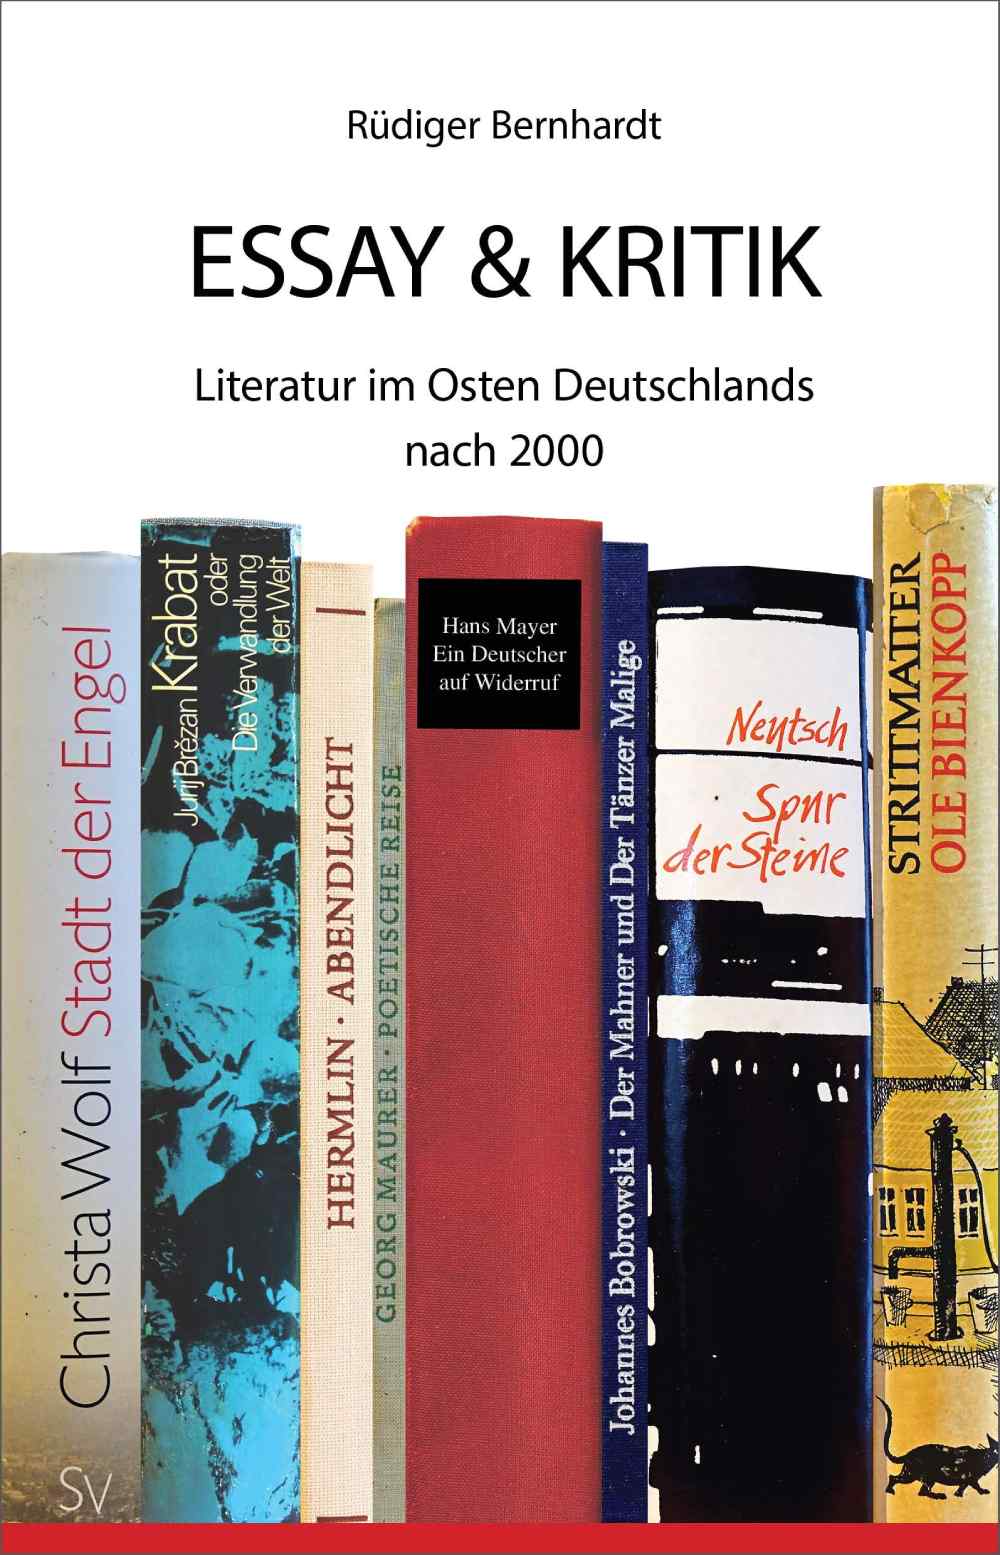 Rüdiger Bernhardt: Essay und Kritik – Literatur im Osten Deutschlands nach 2000“, Abb.: Edition Freiberg